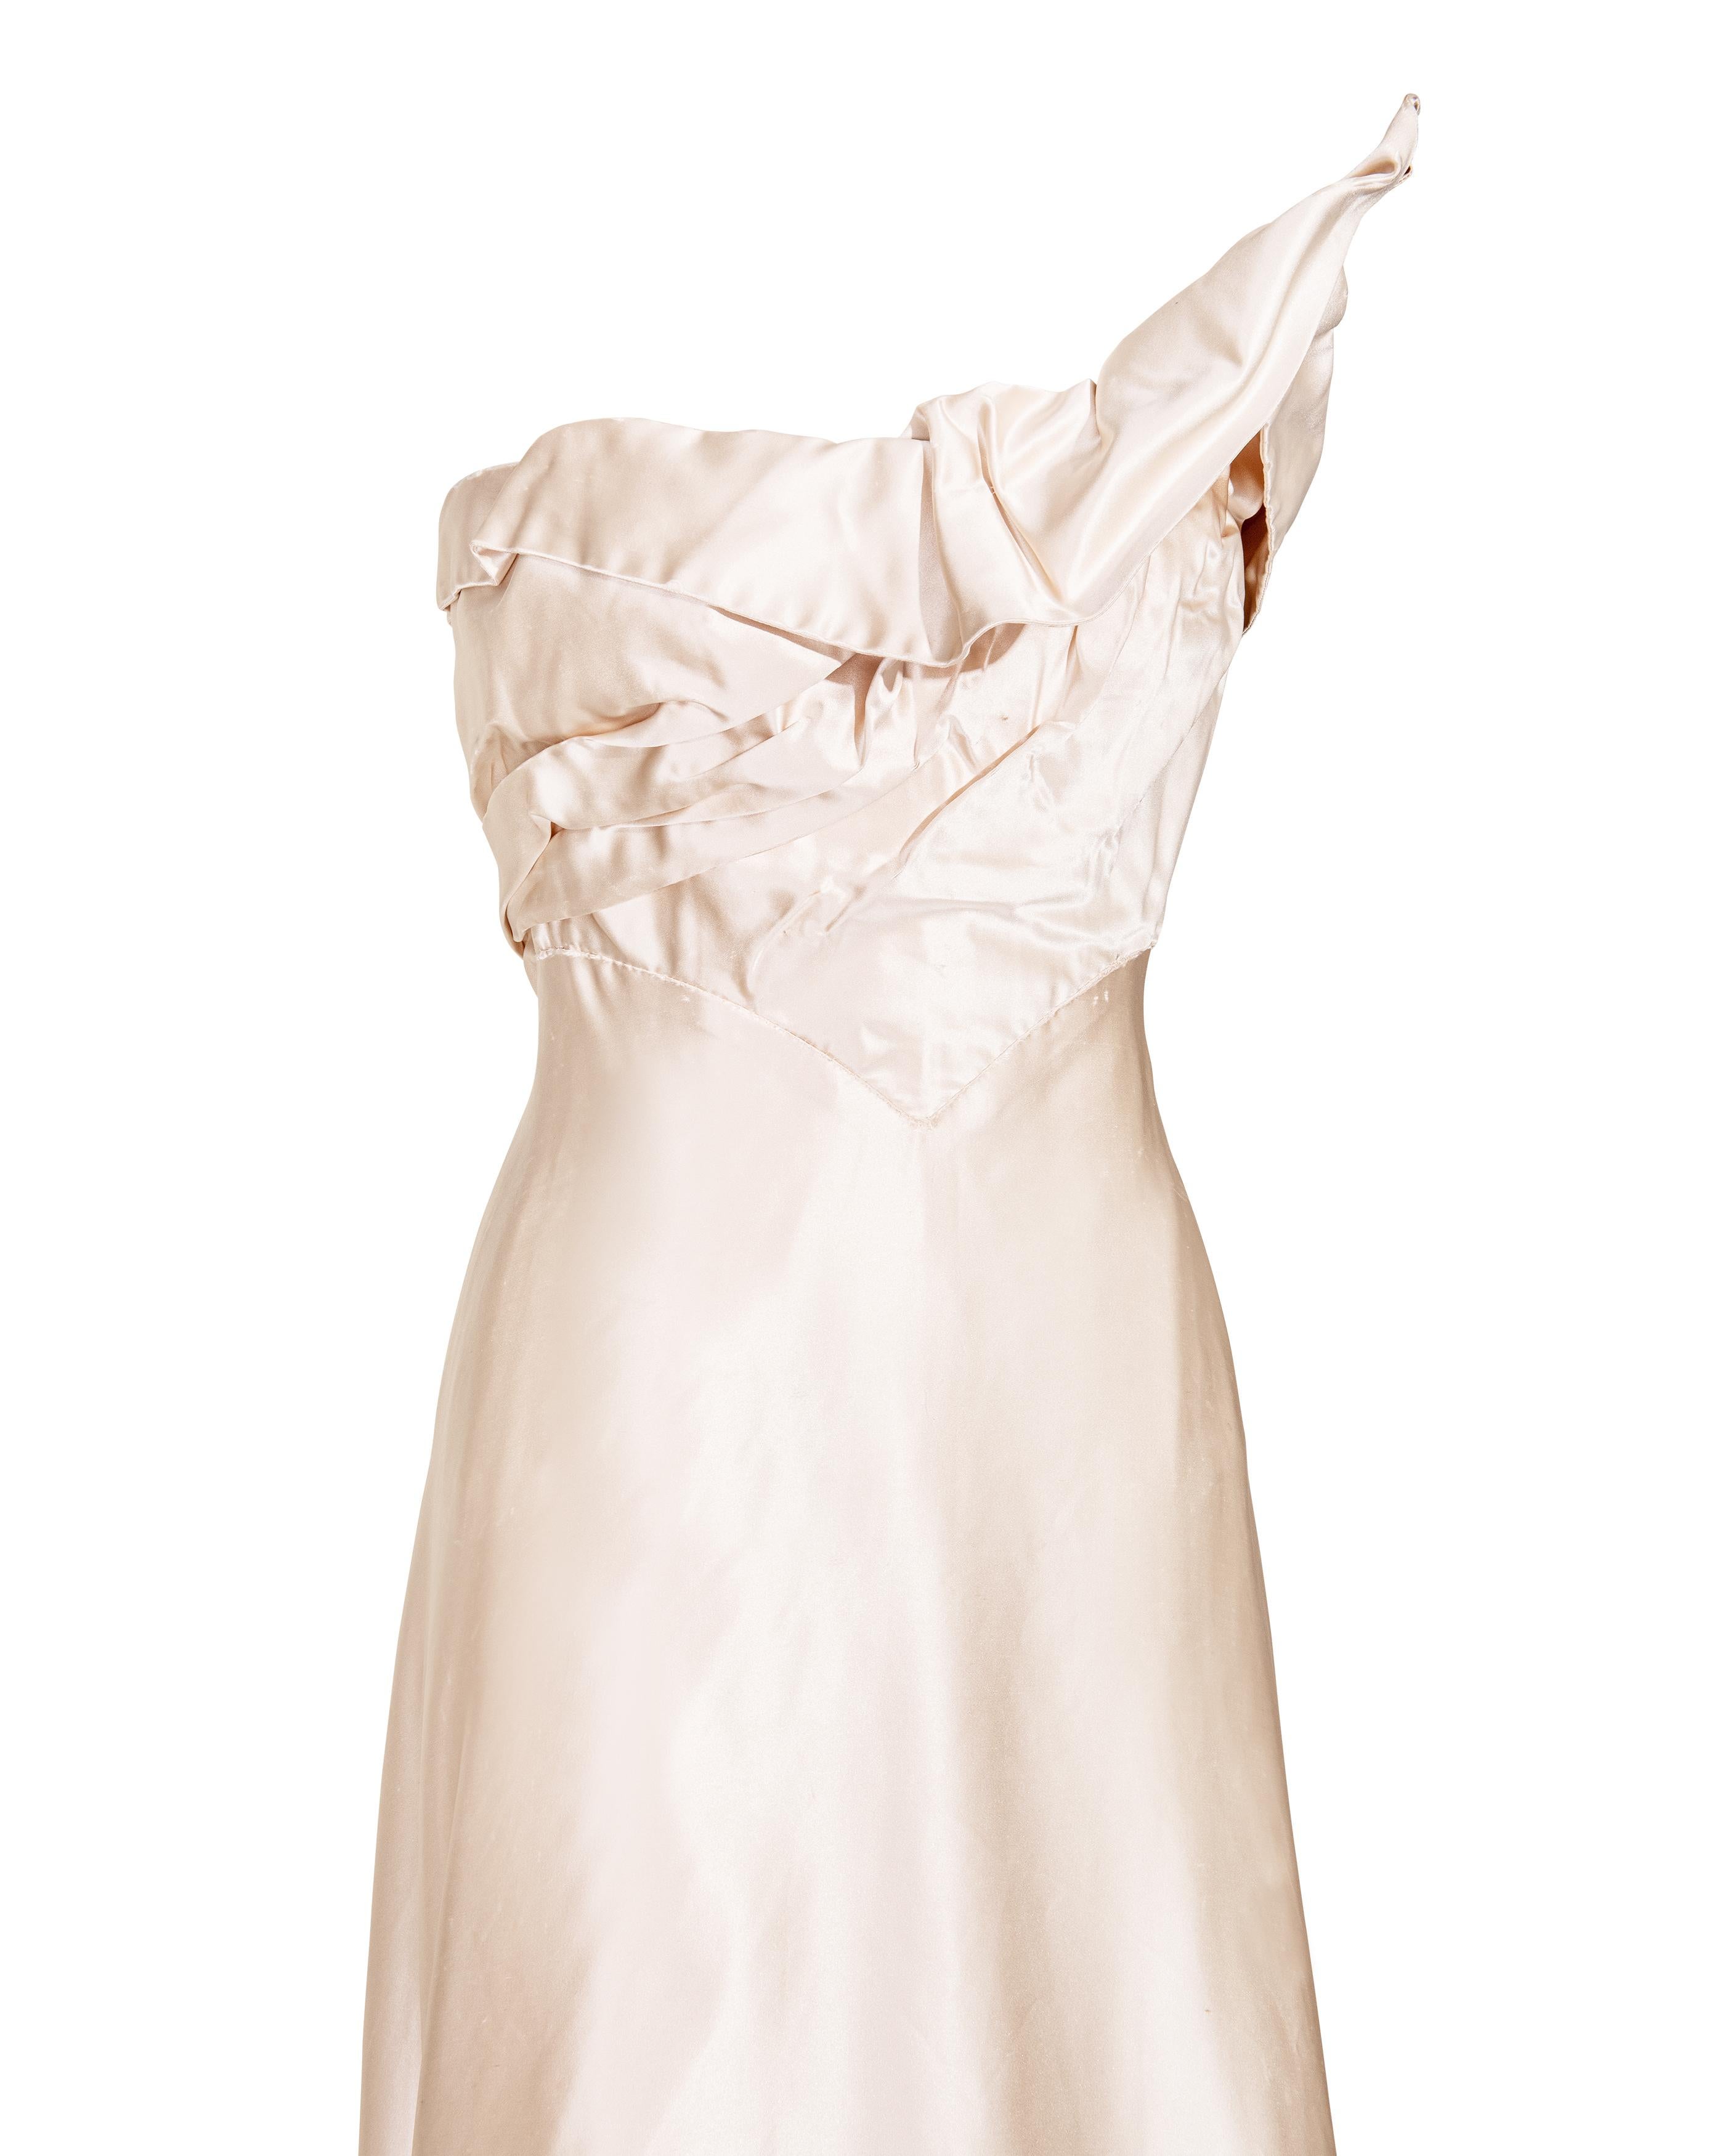 Irene Lentz Haute Couture des années 1940 - Robe à bretelles en soie crème à taille haute 3